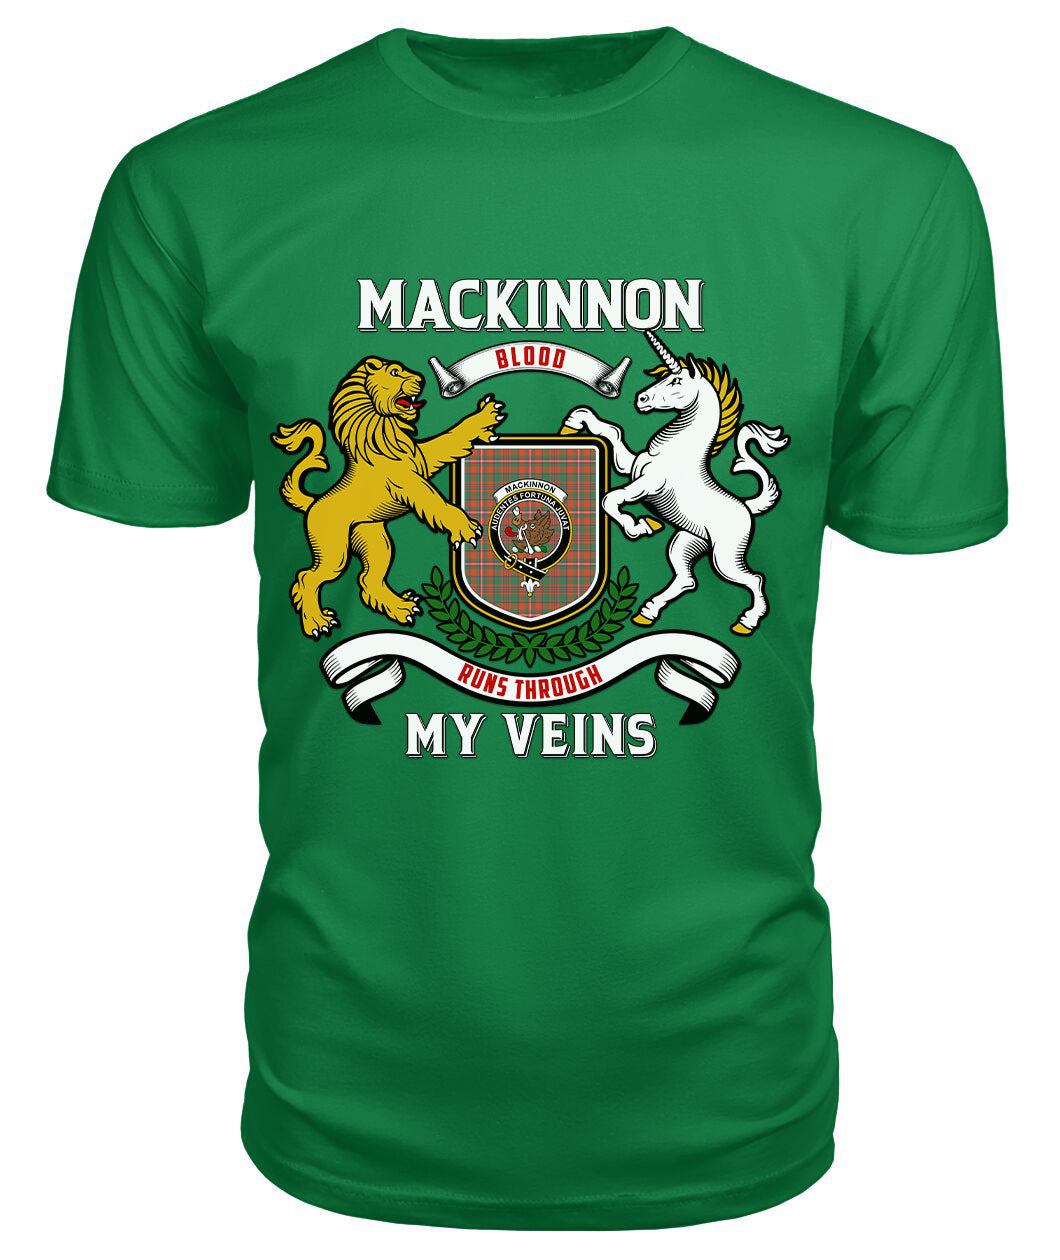 MacKinnon Ancient Tartan Crest 2D T-shirt - Blood Runs Through My Veins Style